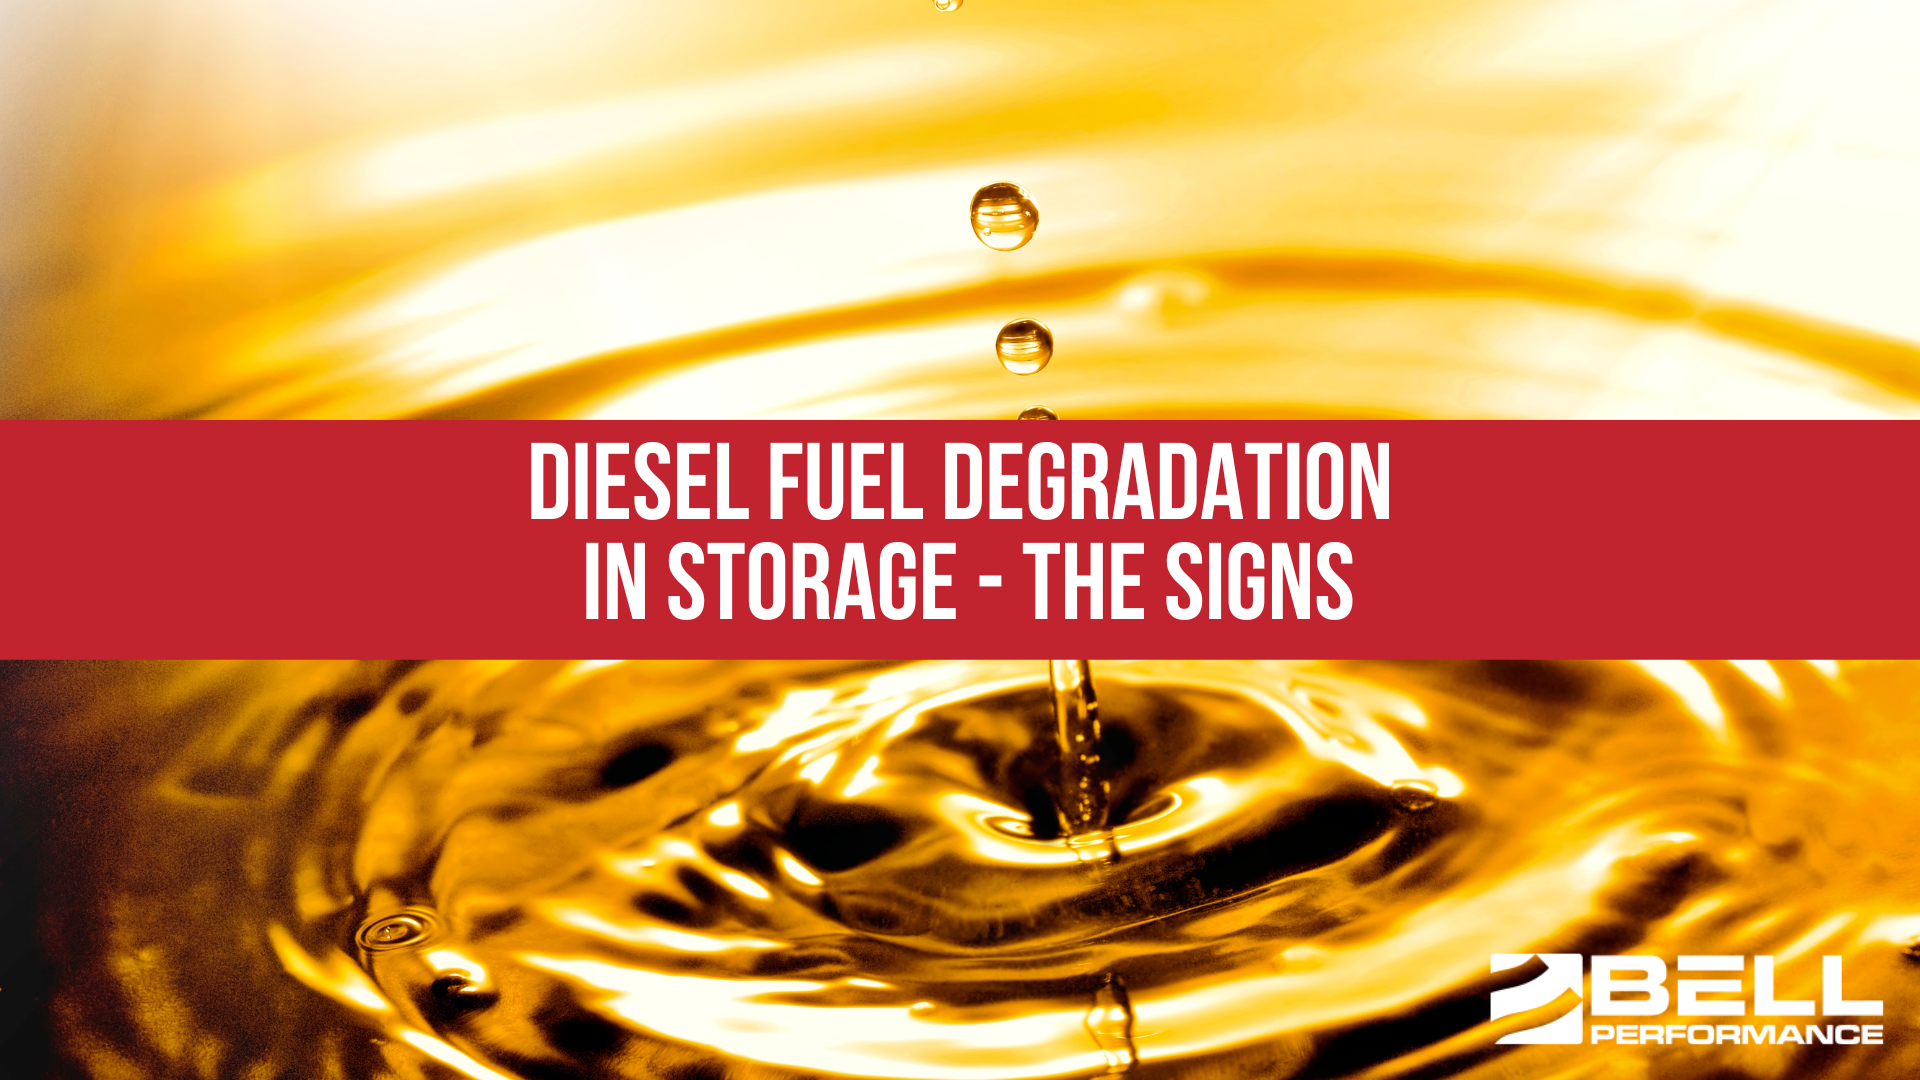 Diesel Fuel Degradation in Storage - the Signs